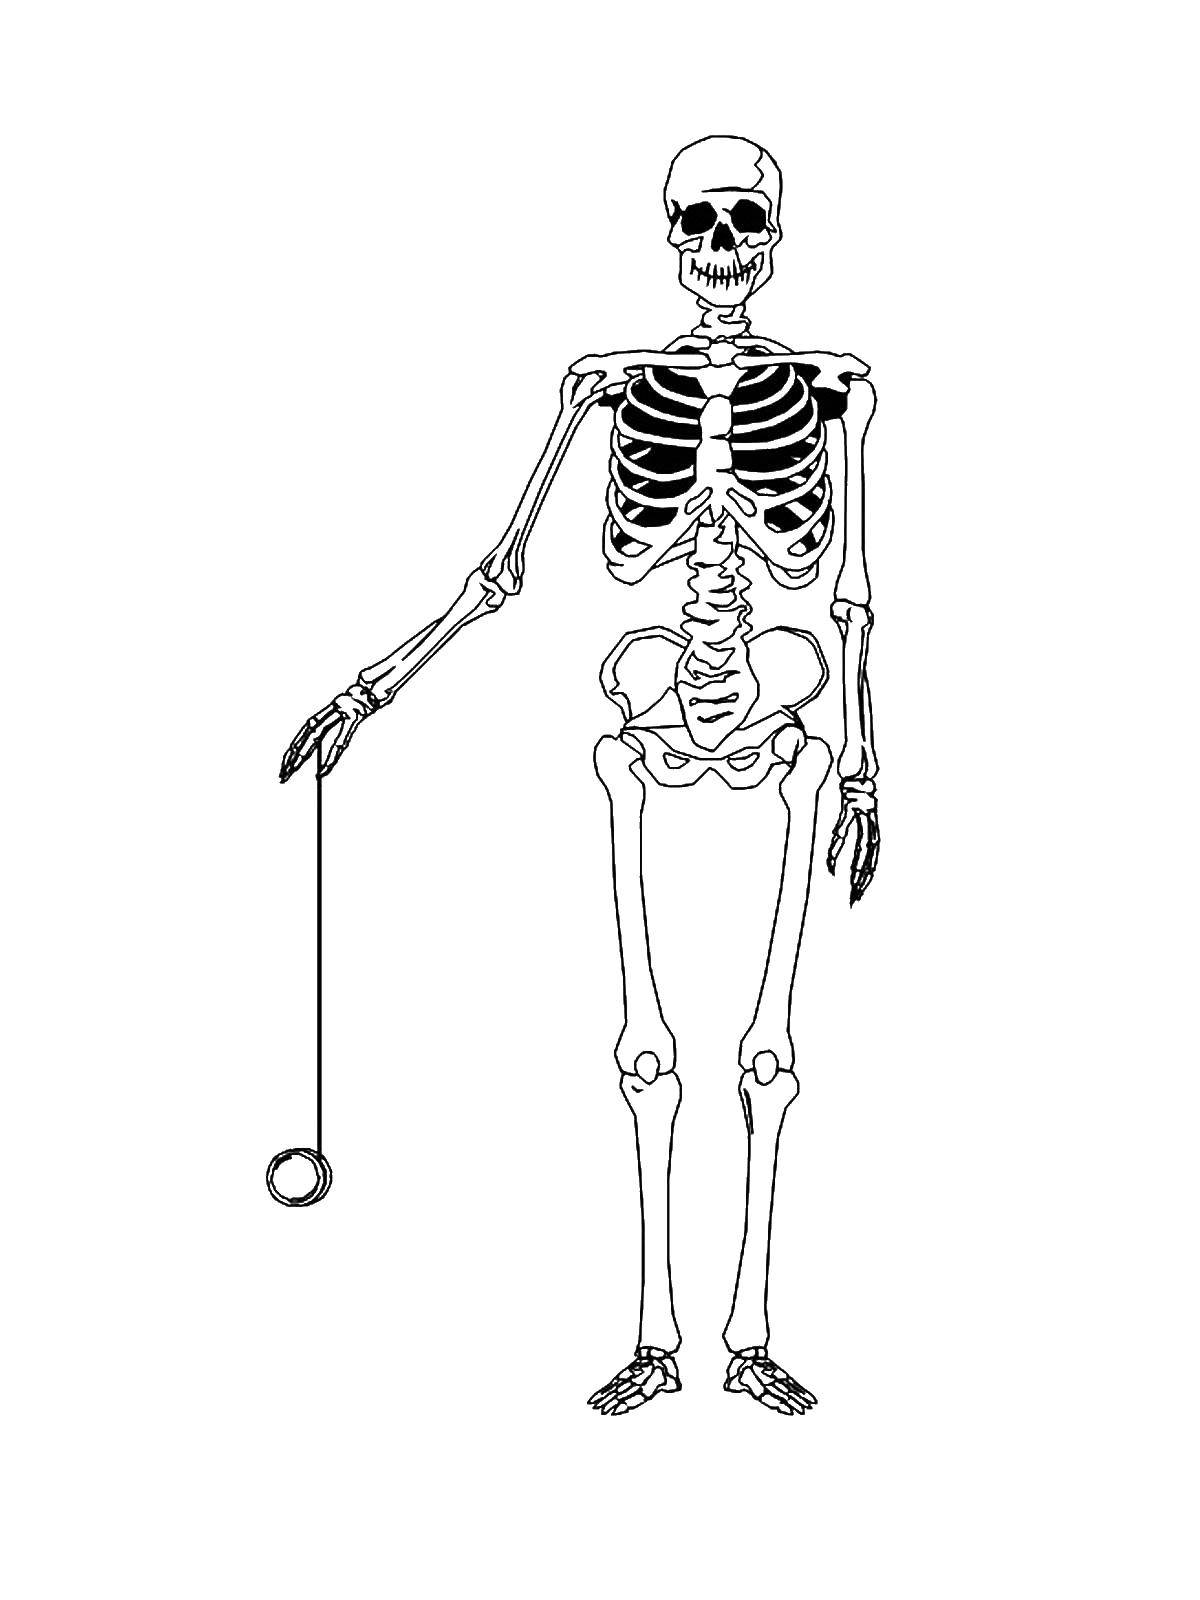 Название: Раскраска Скелетик с йо-йо. Категория: Хэллоуин. Теги: Хэллоуин, скелетик.